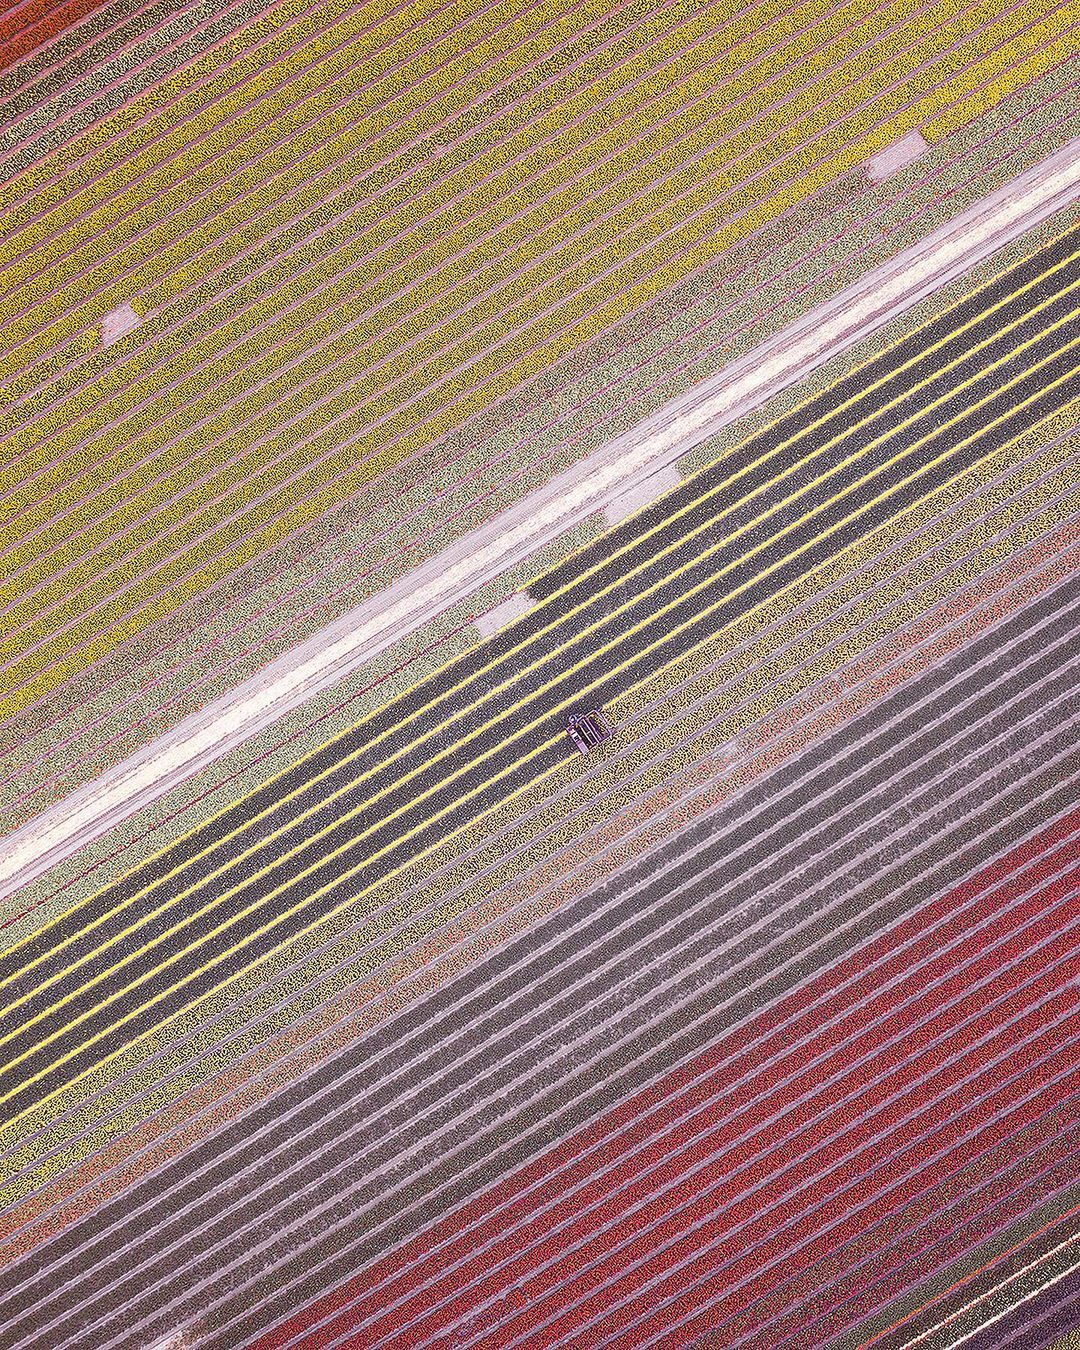 Знакомство с планетой: впечатляющие тревел-фото Ромена Маттеи планета,тревел-фото